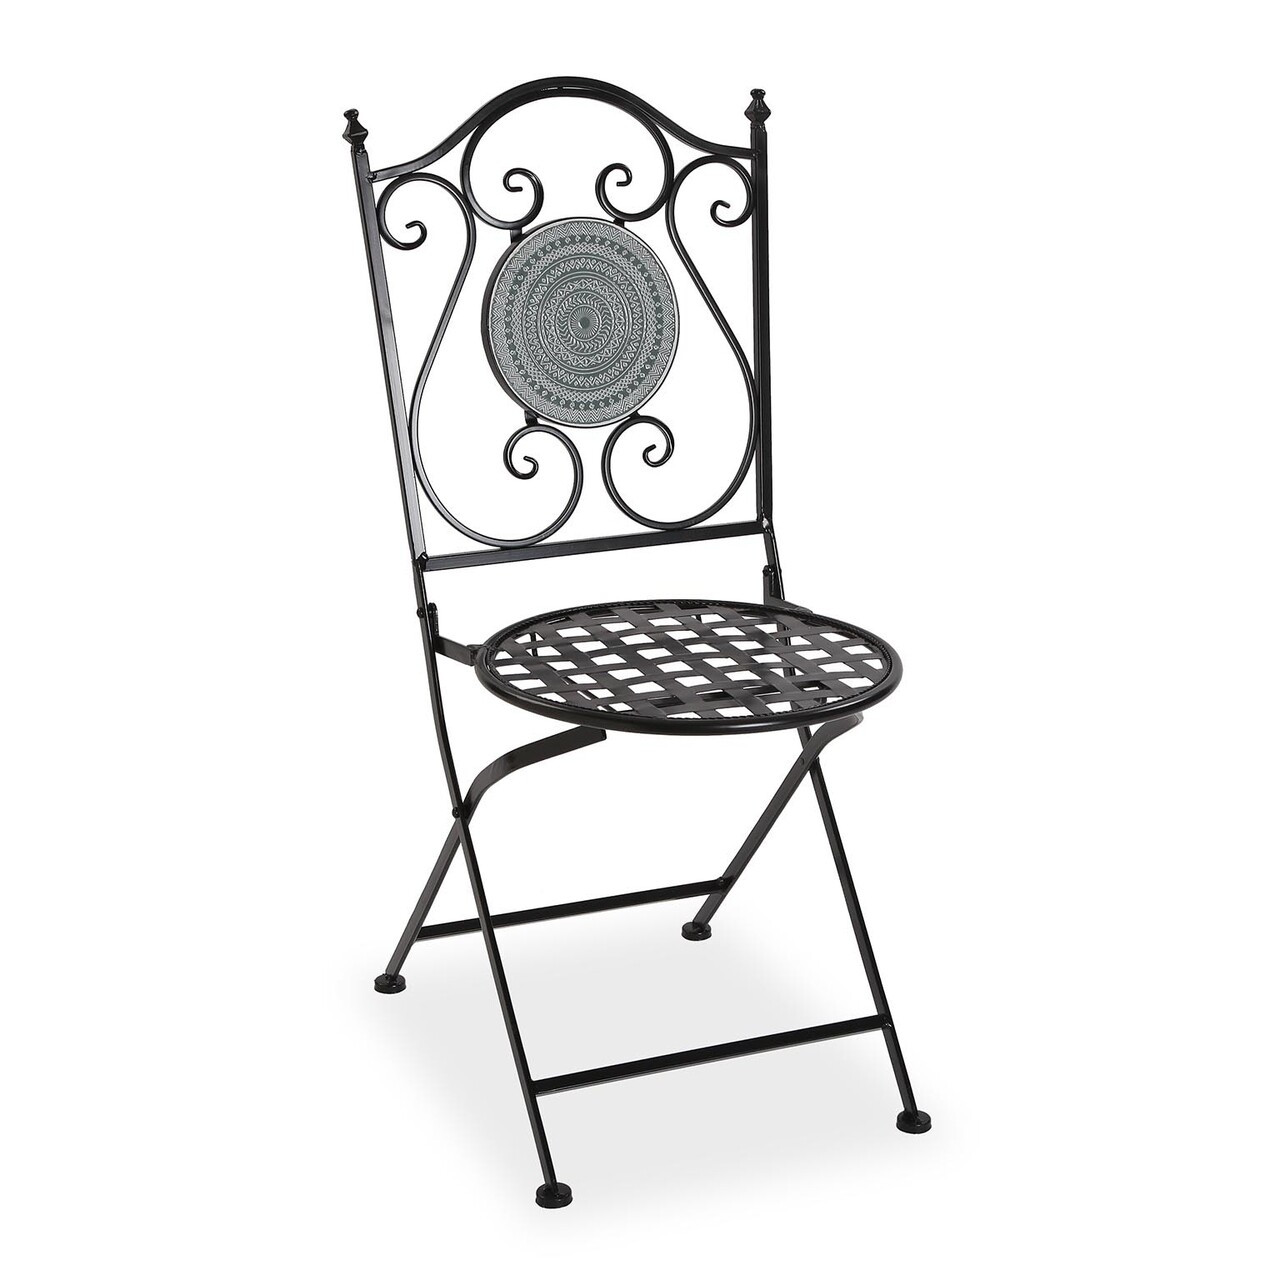 Mosaic grey összecsukható kerti szék, versa, 39 x 50 x 92 cm, fém